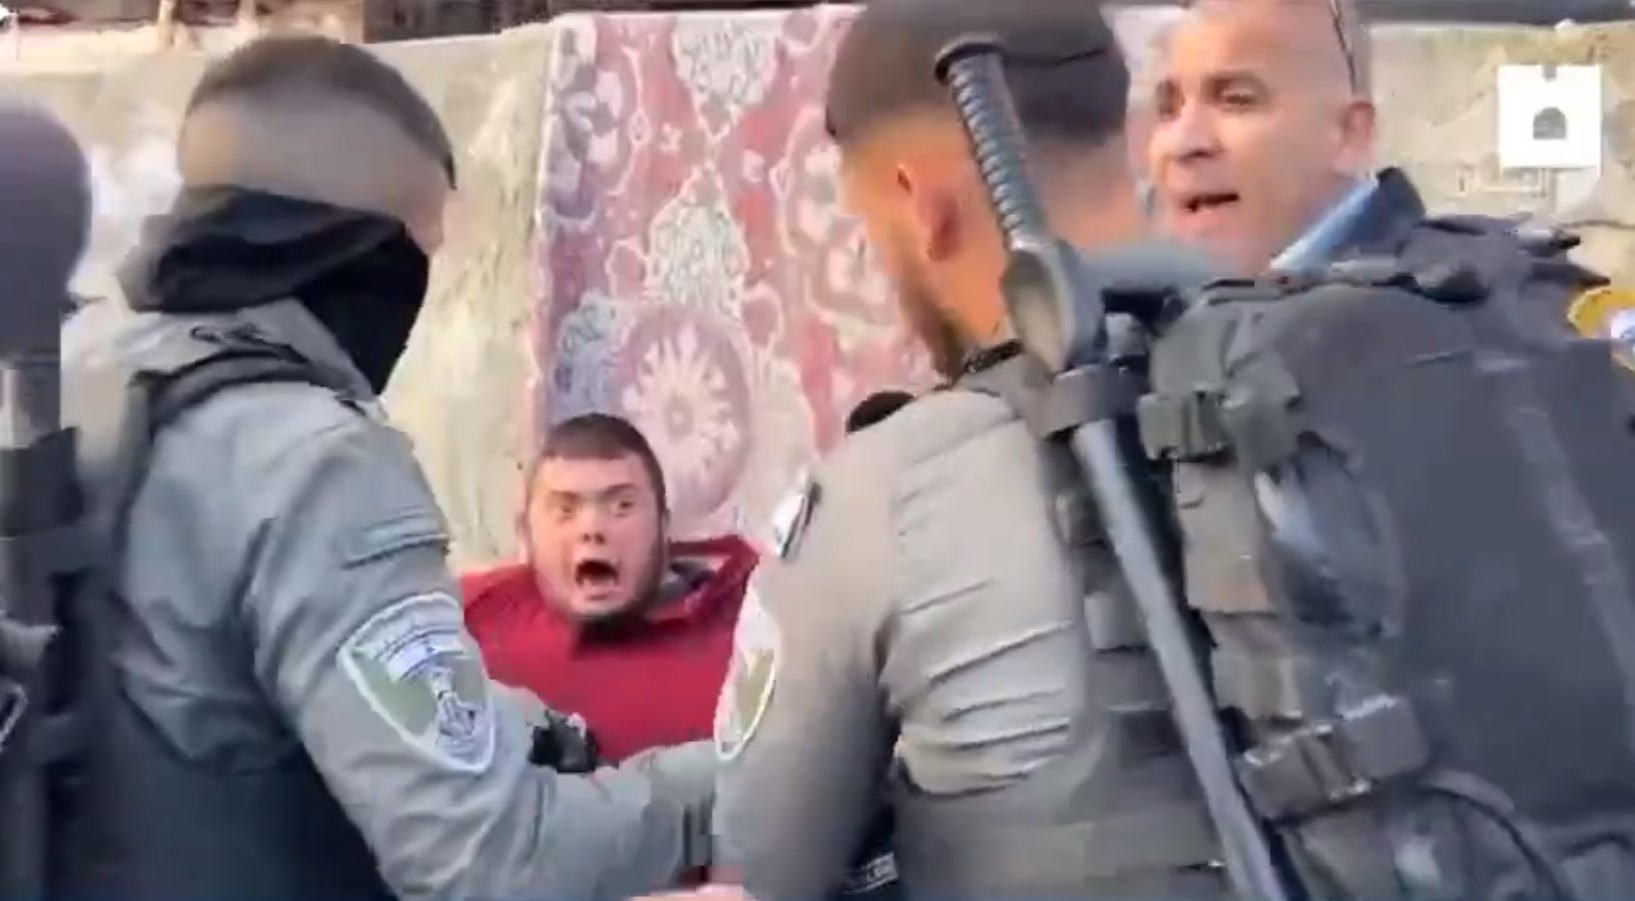 İşgalci İsrail askerleri down sendromlu çocuğa işkence ettiler! Görüntüleri izleyenlerin kanı dondu!